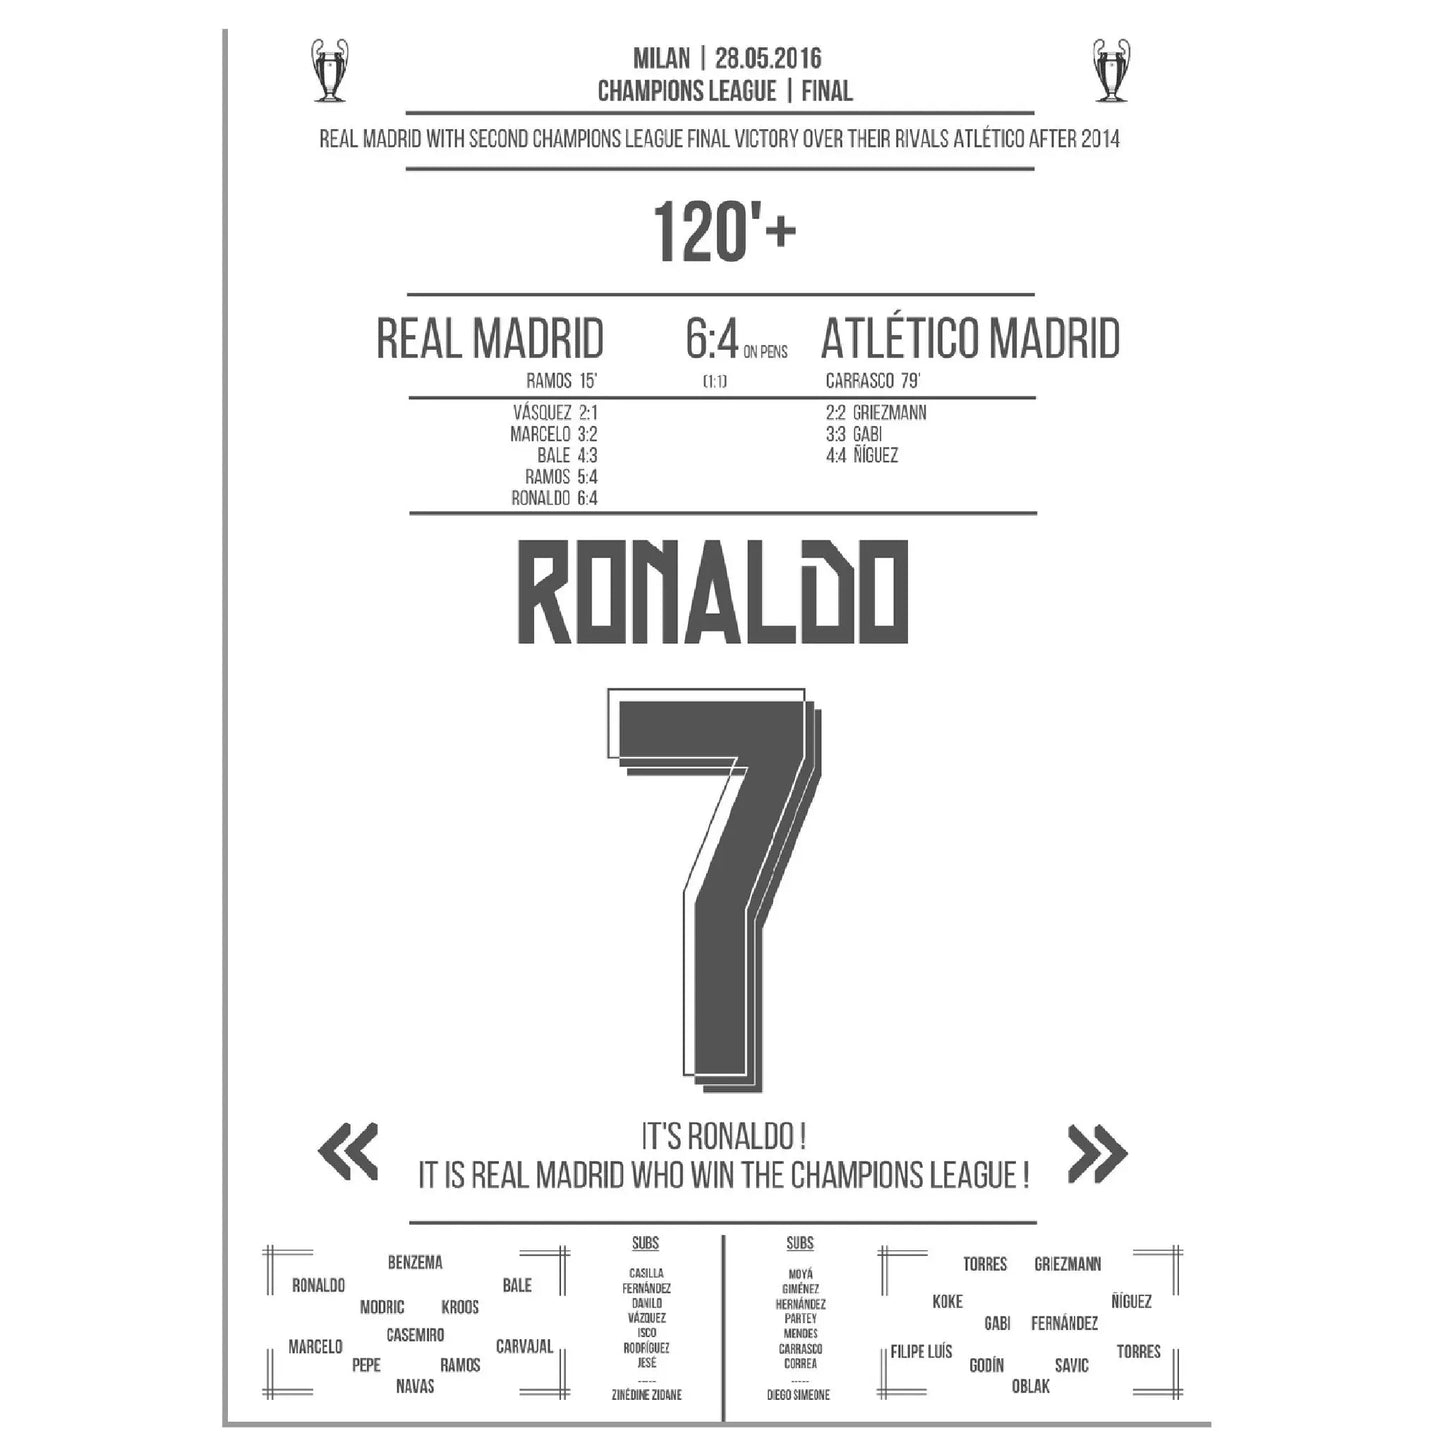 Ronaldo trifft den entscheidenden Elfer im zweiten Champions League Finalsieg Reals gegen Atletico 